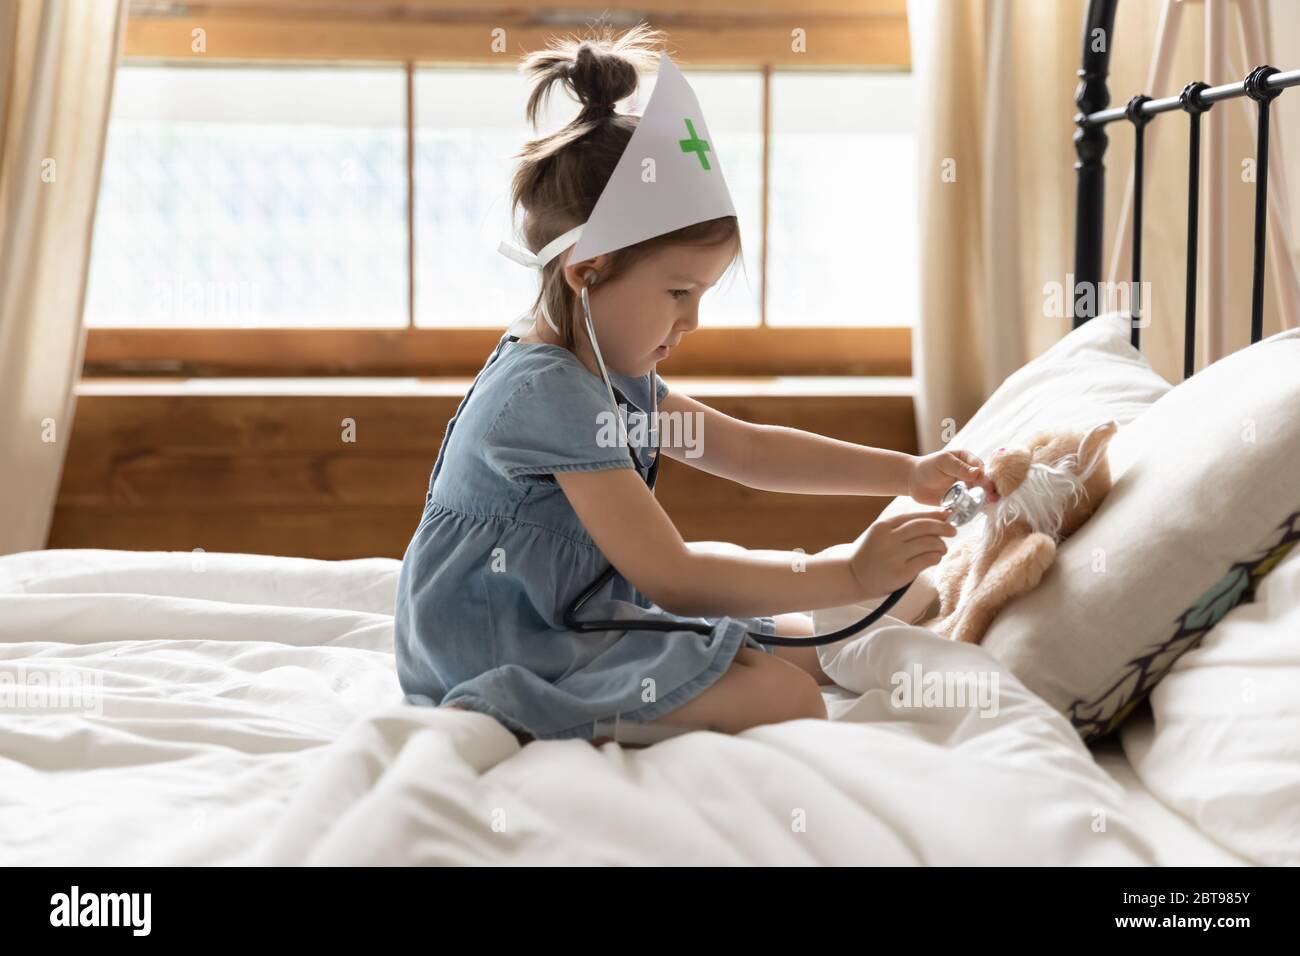 Carina bambina vestita come medico giocando con giocattolo Foto Stock